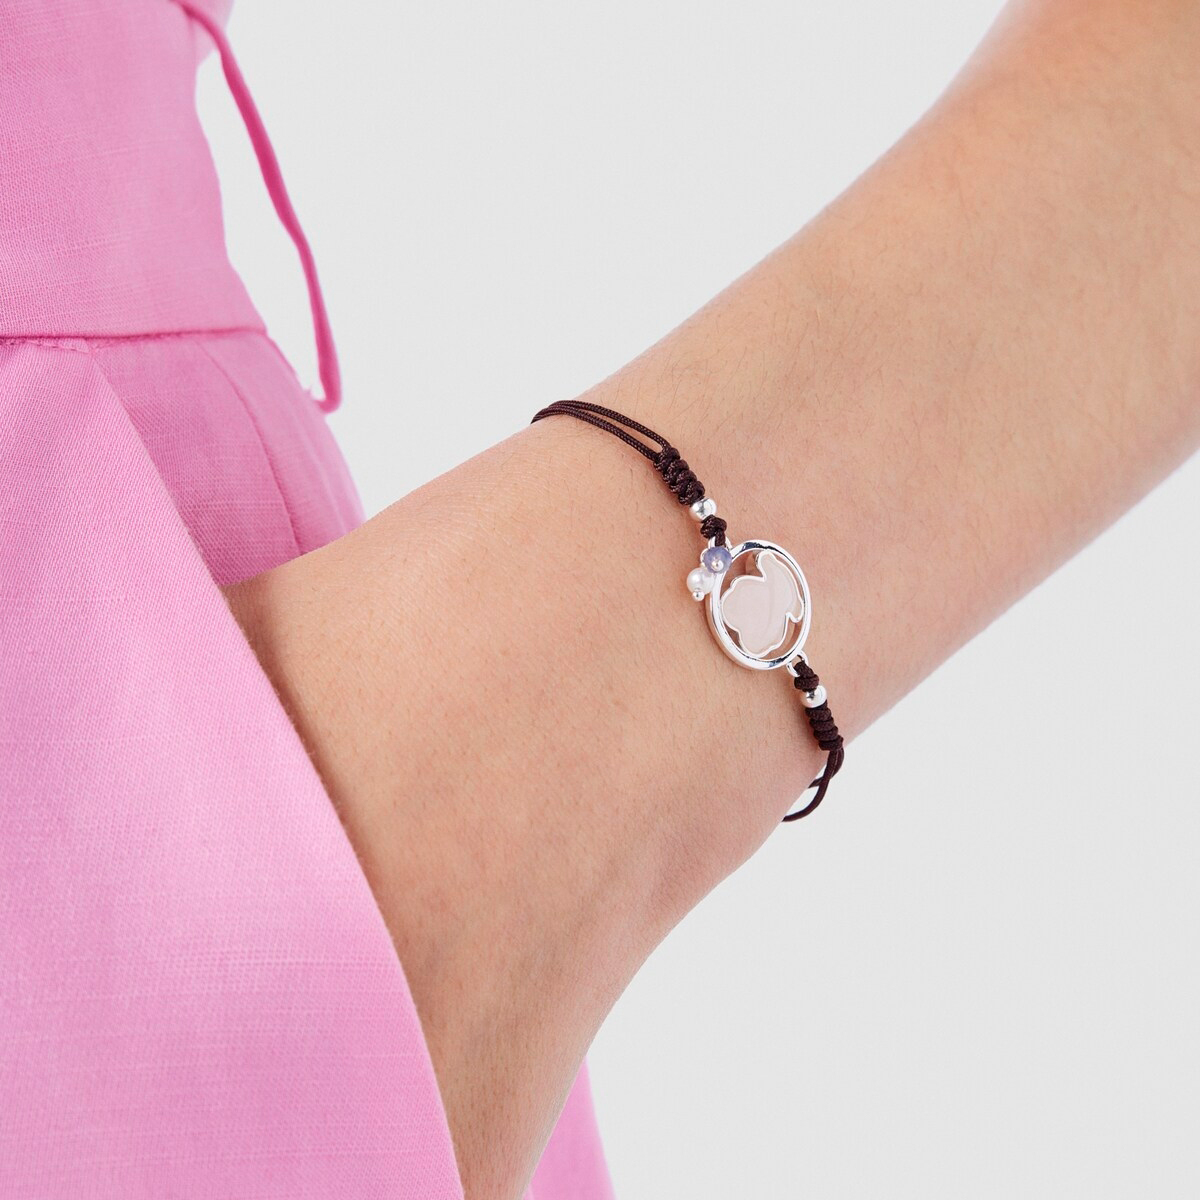 Серебряный браслет Camille с розовым кварцем, иолитом и жемчугом TOUS712161630 — купить в AllTime.ru — фото